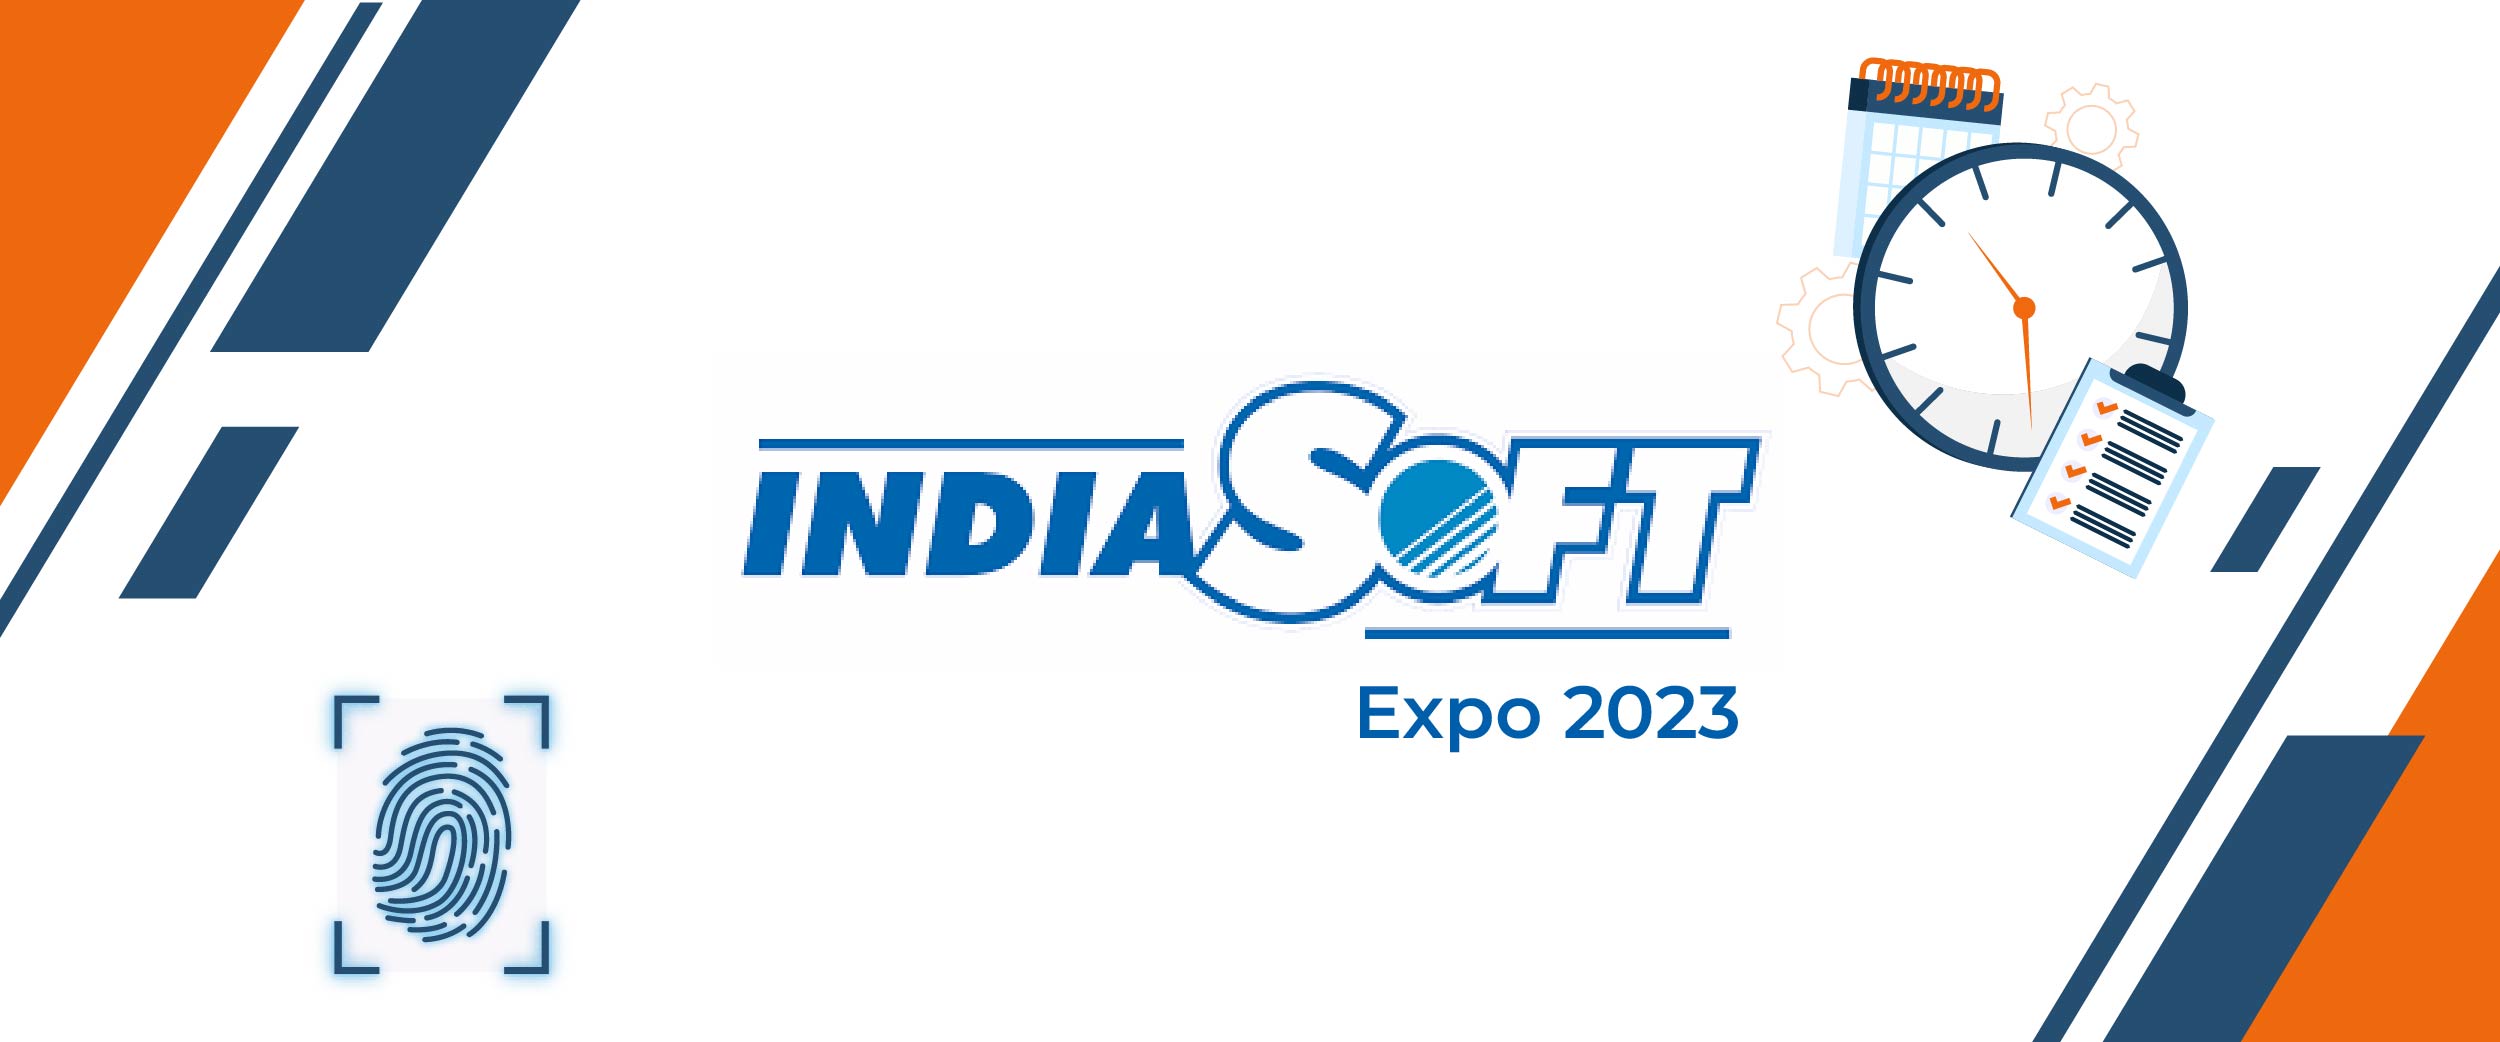 india-soft-expo-2022